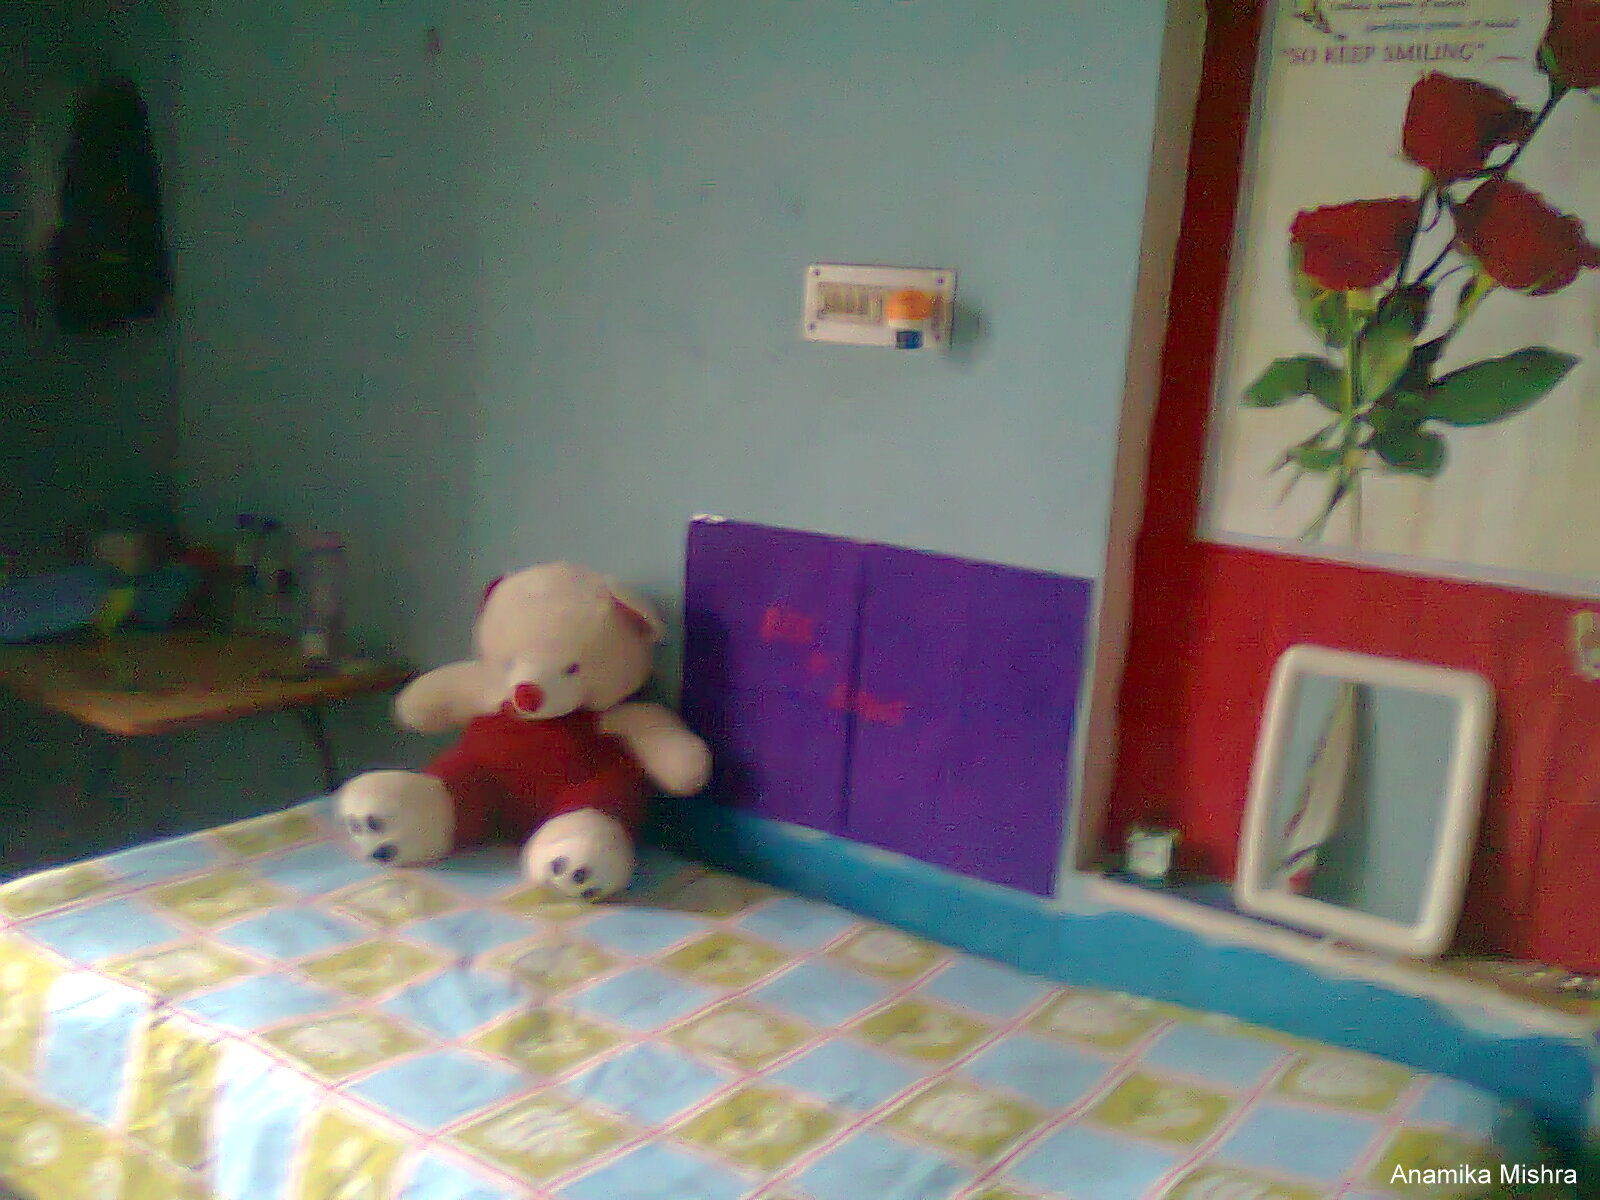 #AmityDiaries : My Hostel Room